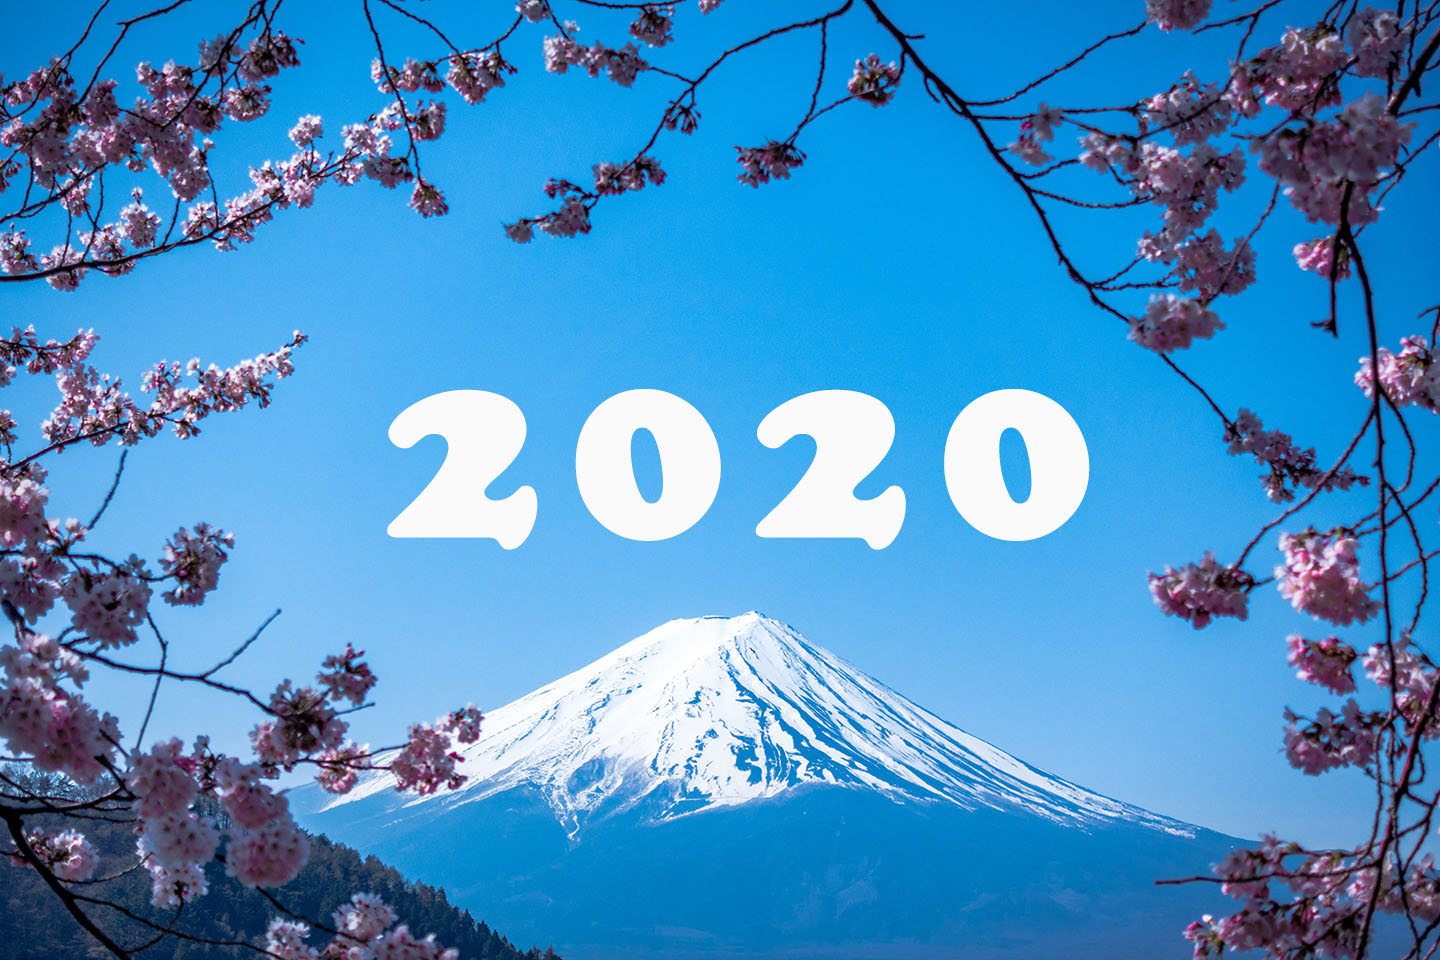 ย้อนเทรนด์ญี่ปุ่นปี 2020